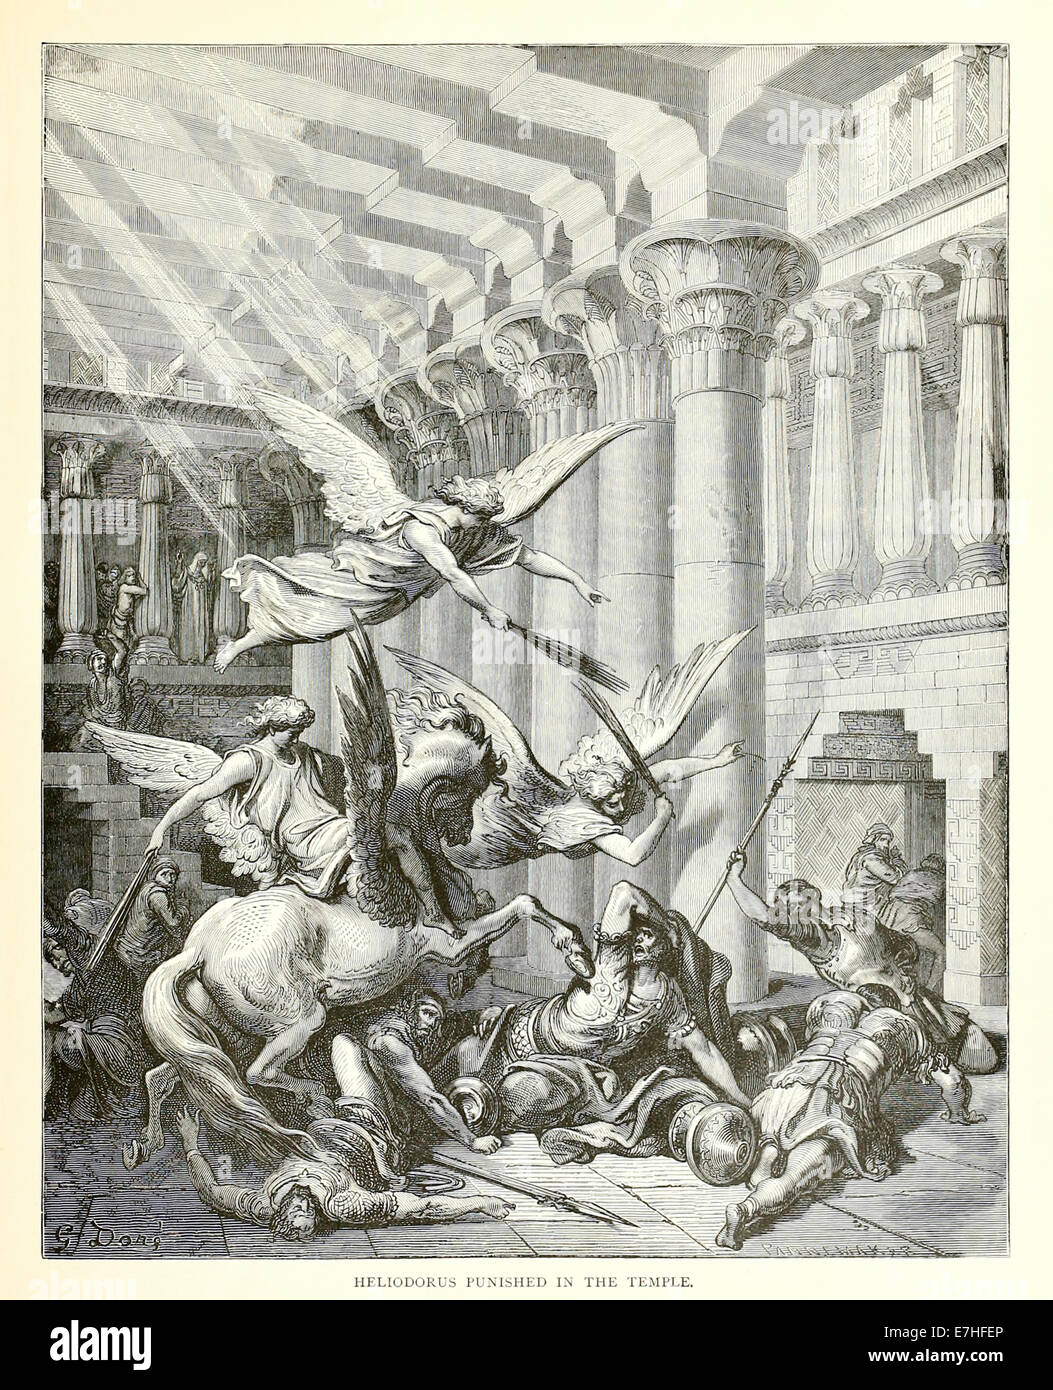 Illustrazione di Paul Gustave Doré (1832-1883) dal 1880 edizione della Bibbia. Vedere la descrizione per maggiori informazioni. Foto Stock